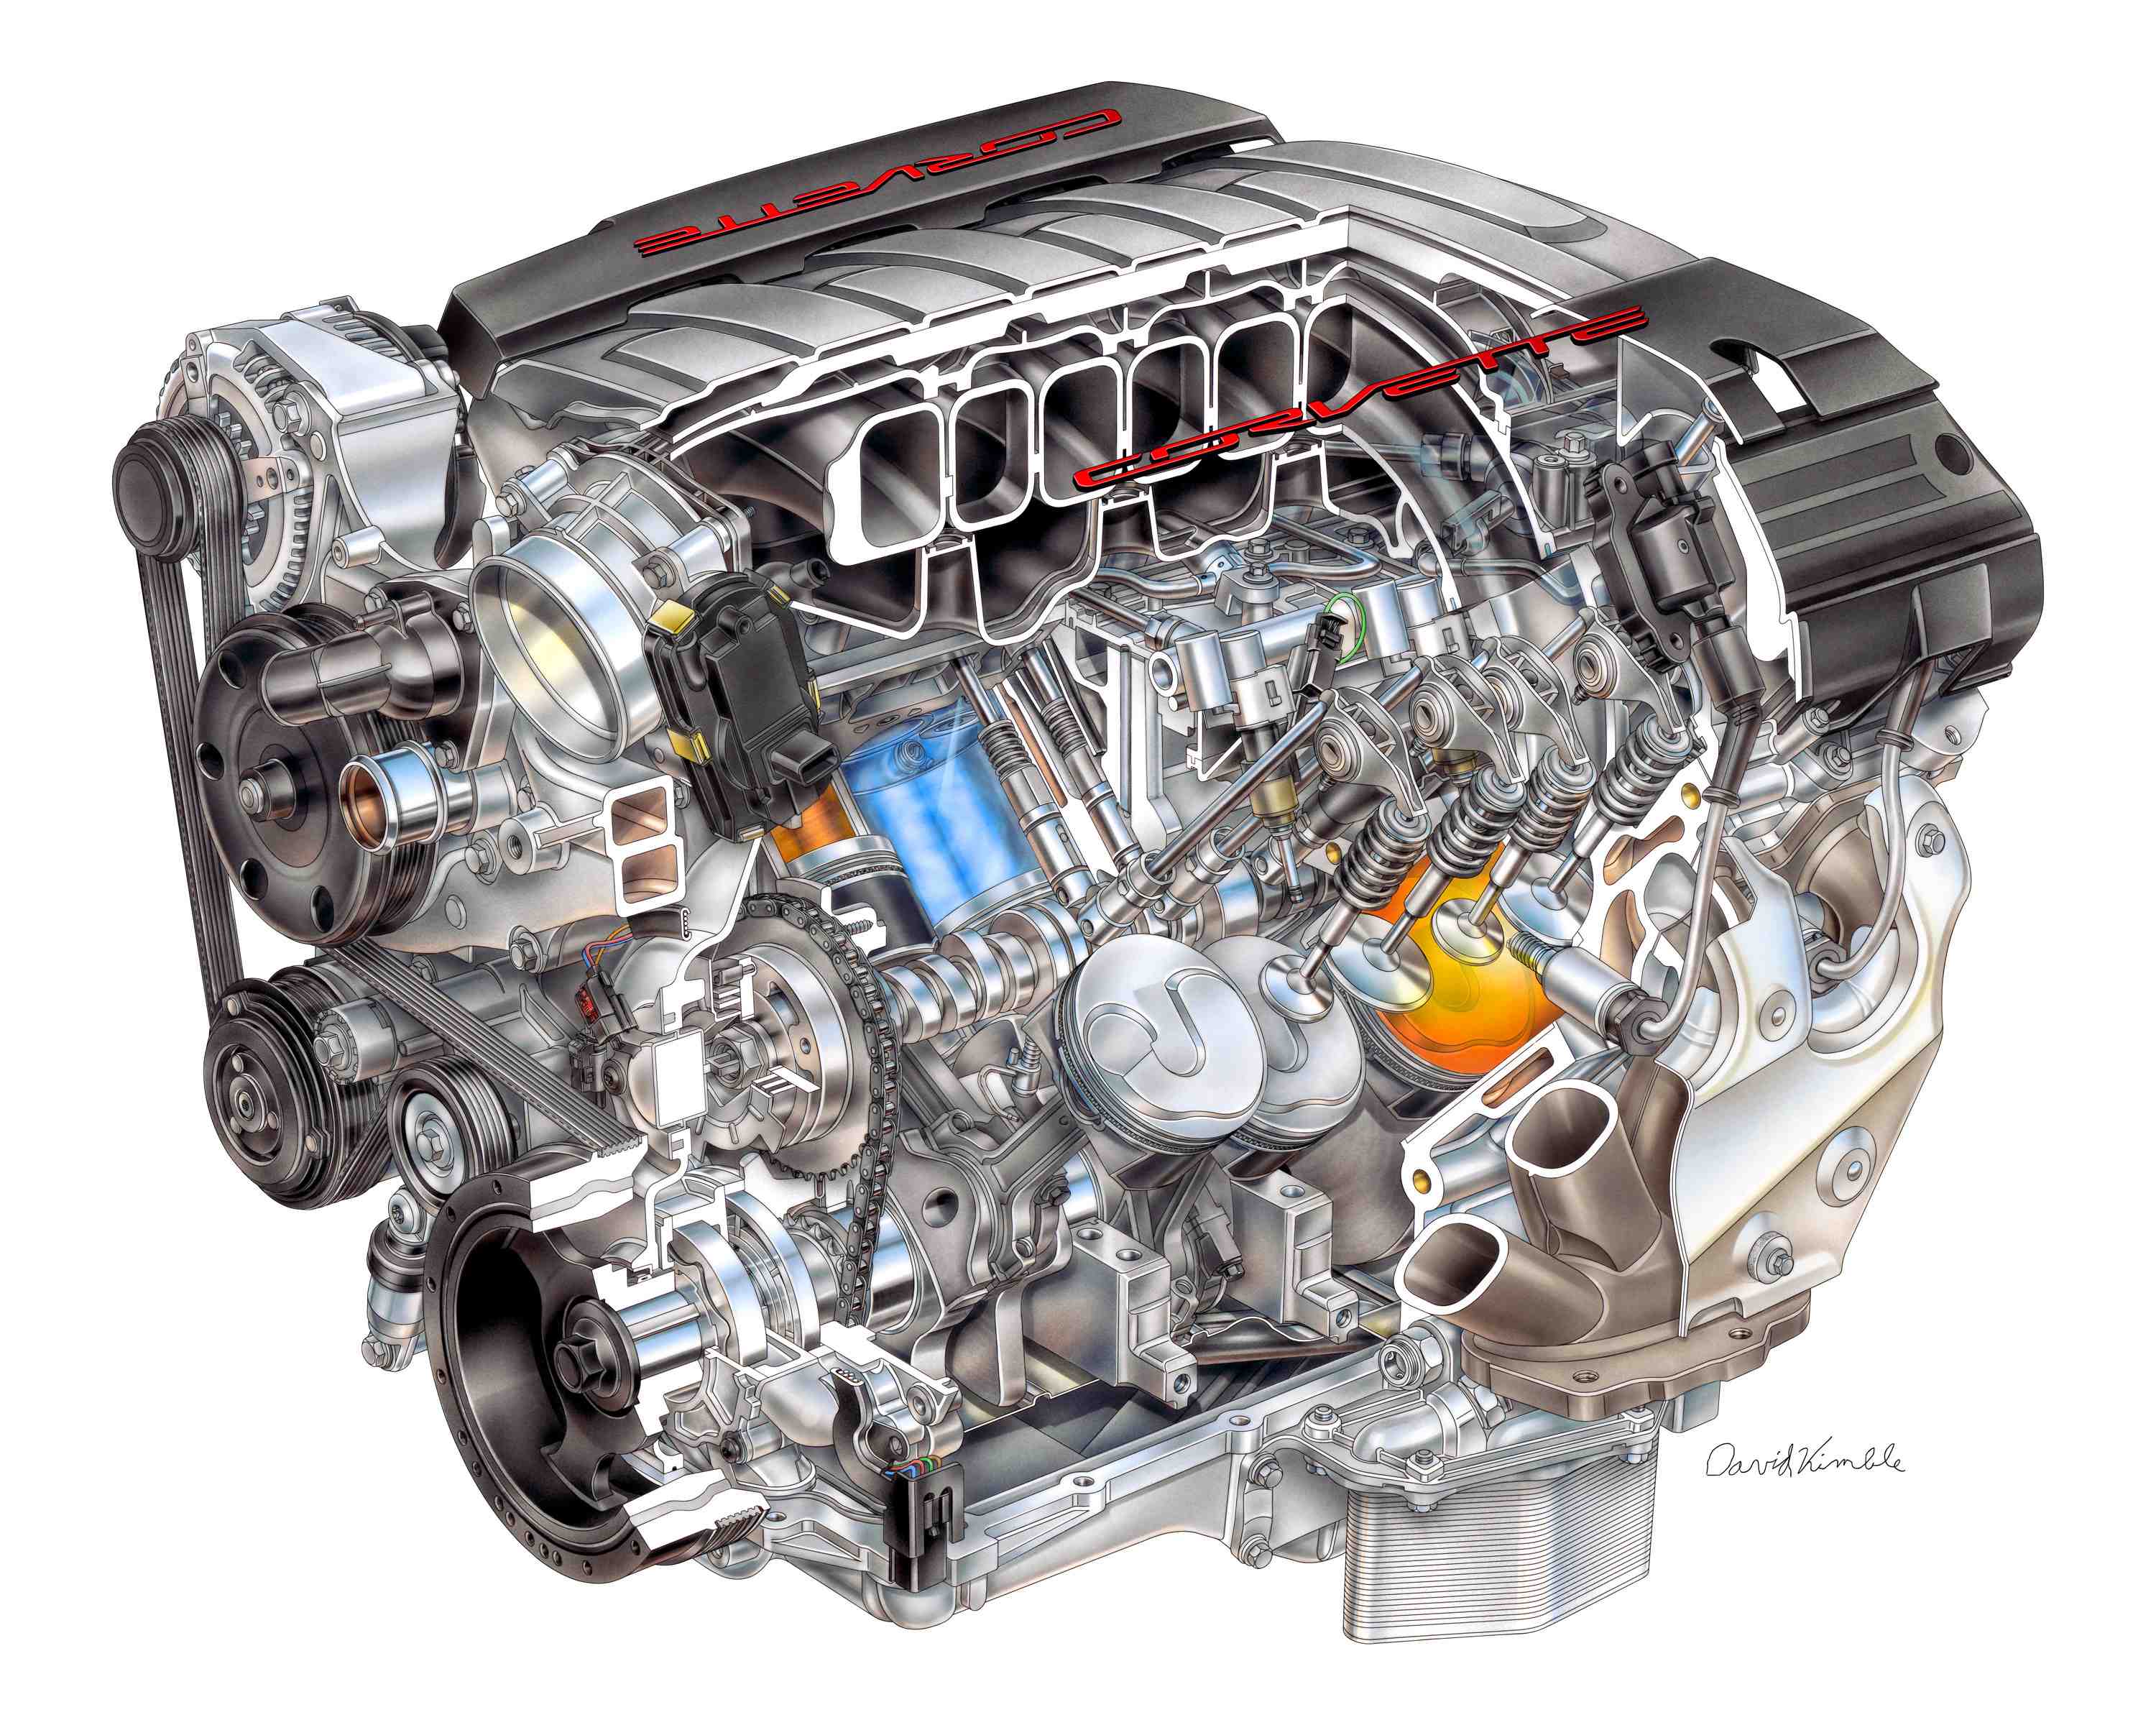 Автомобили двигатель 1.4. Двигатель Chevrolet lt1. GM lt5 двигатель. Двигатель Корвет lt 1. GM 6.2 Diesel v8.